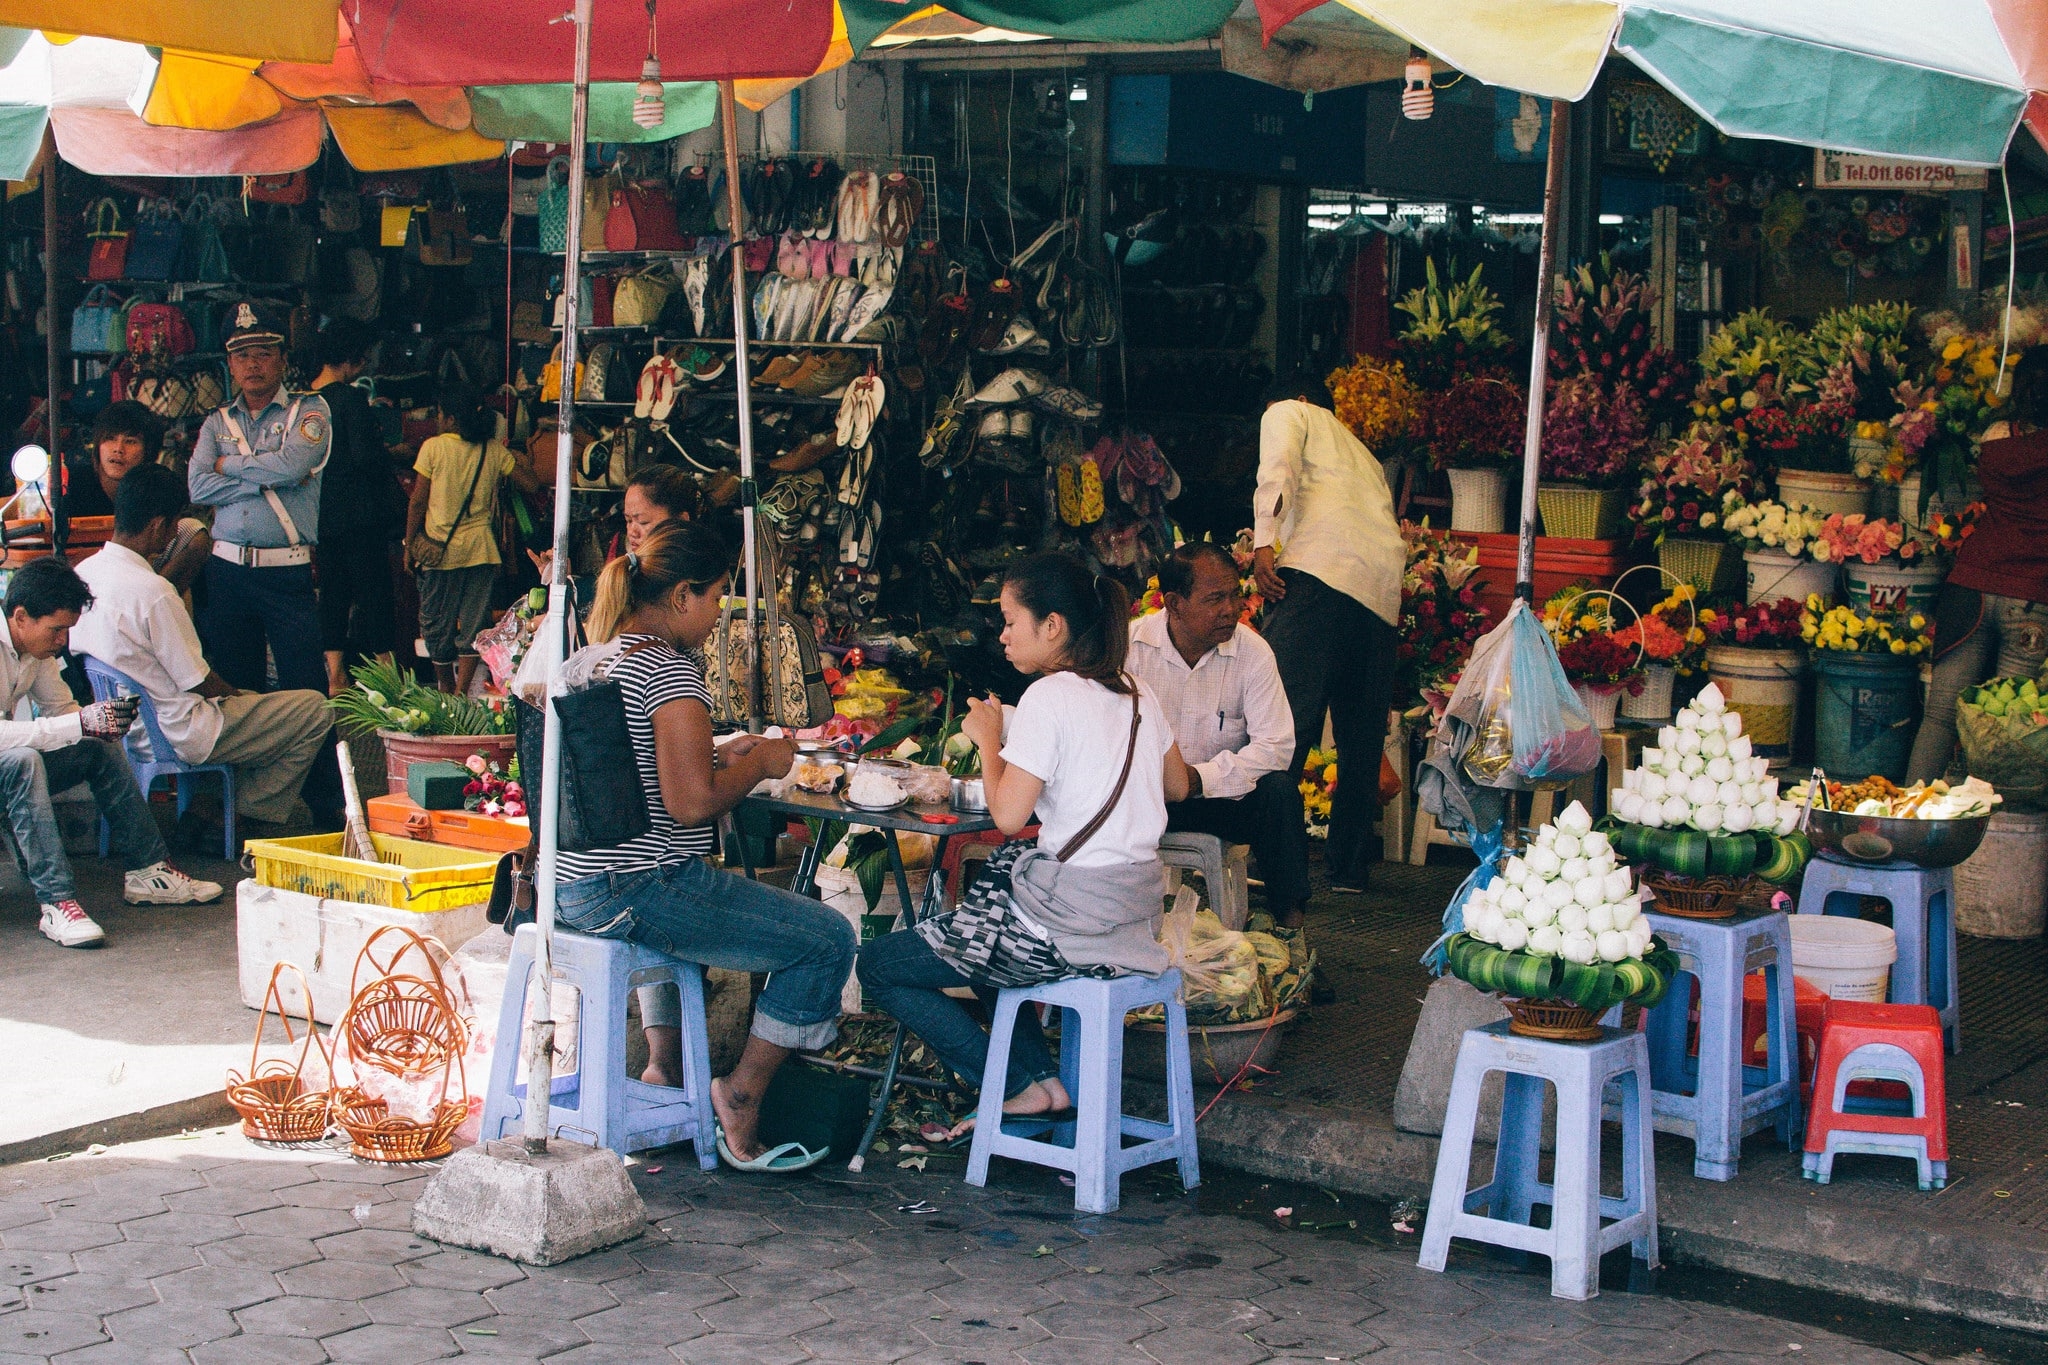 Khám phá chợ Campuchia tại Sài Gòn